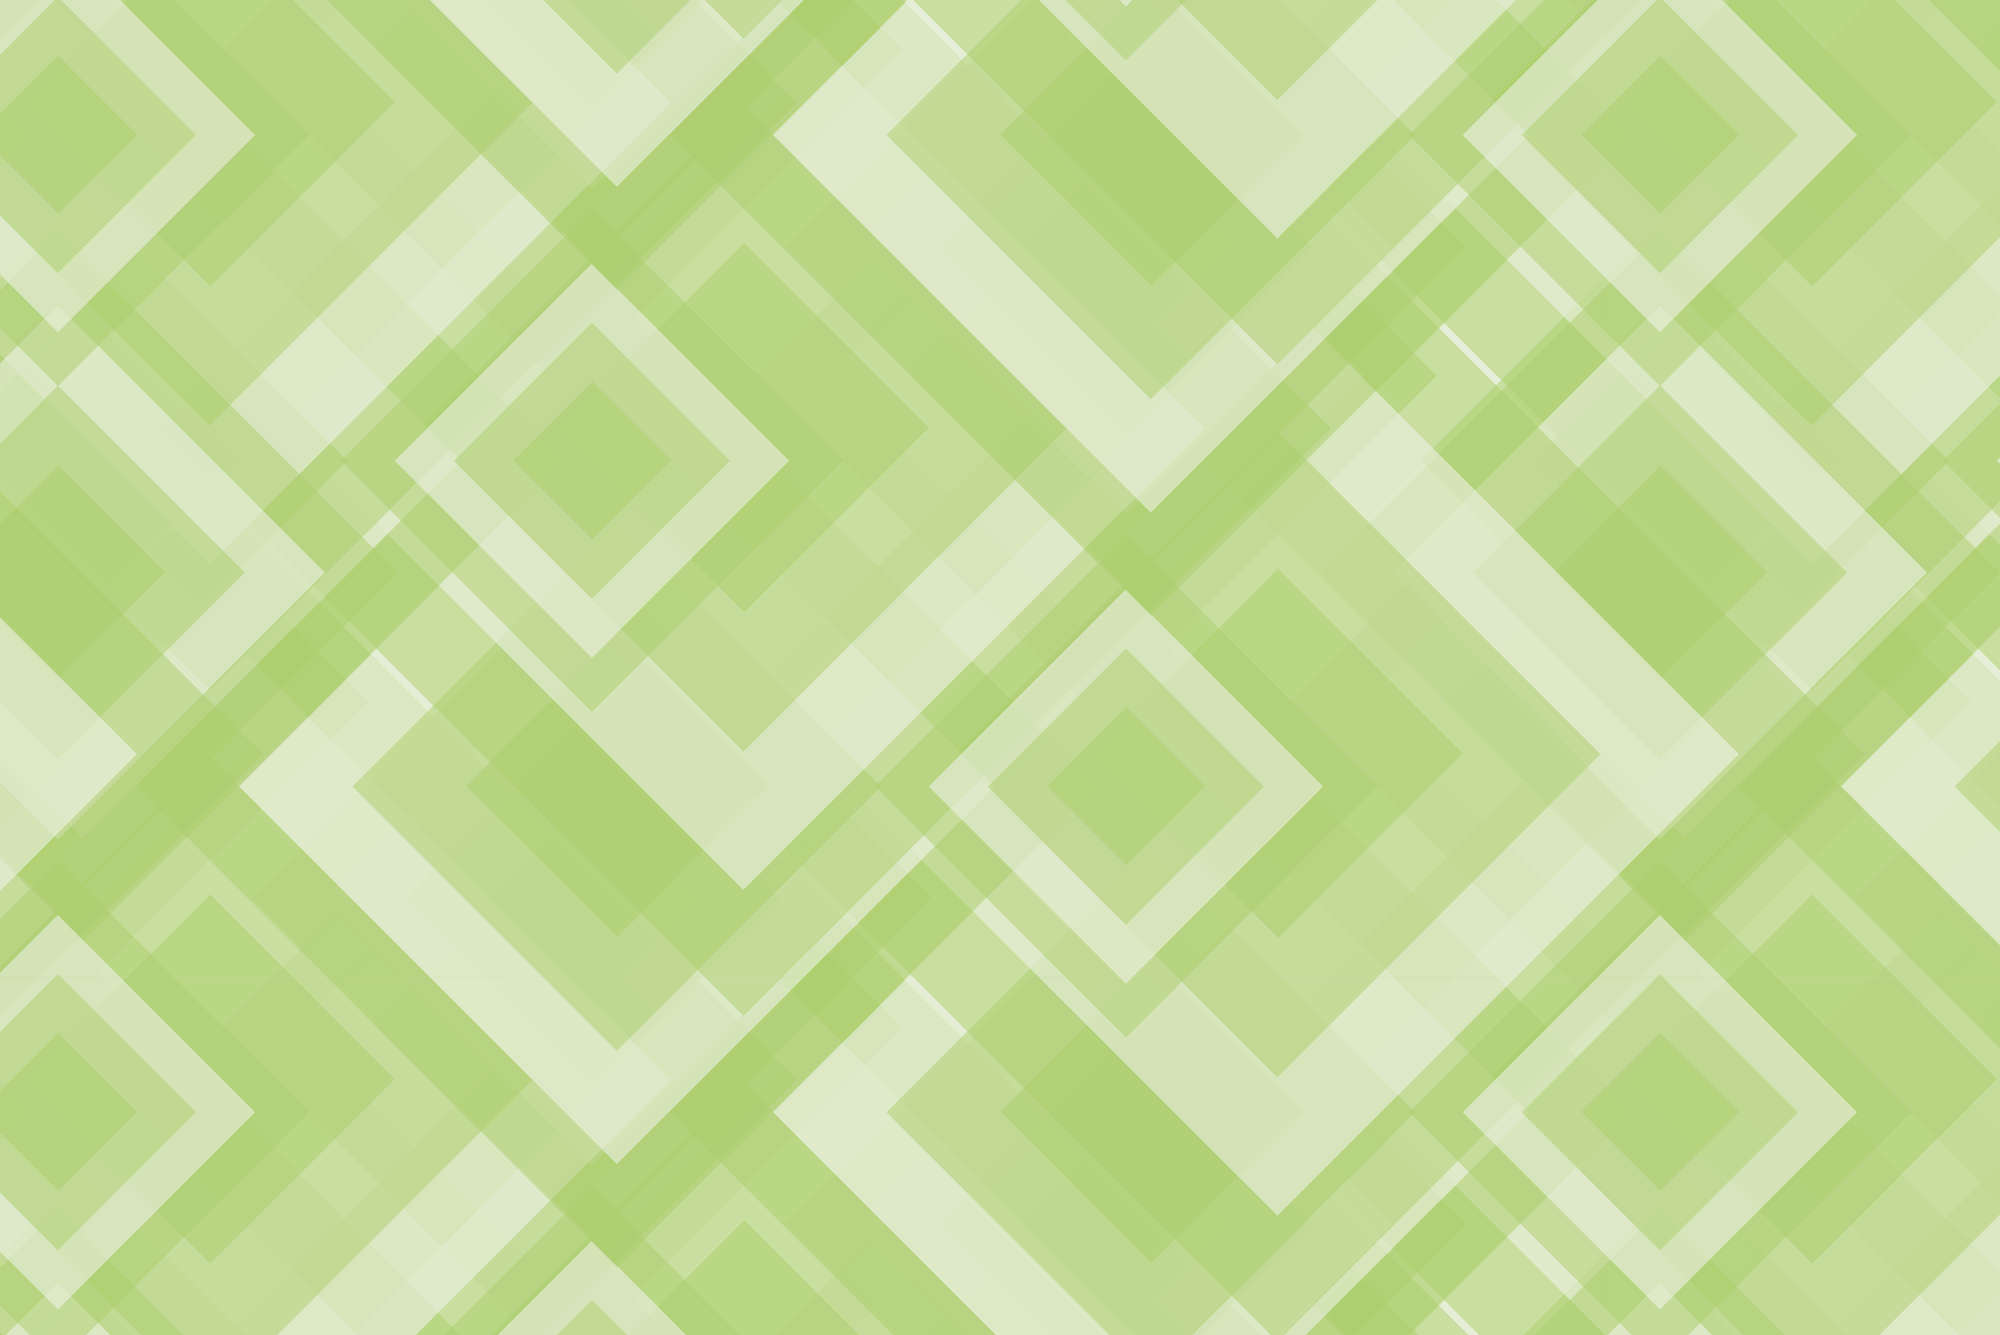             Papier peint panoramique design carrés se chevauchant vert sur intissé lisse nacré
        